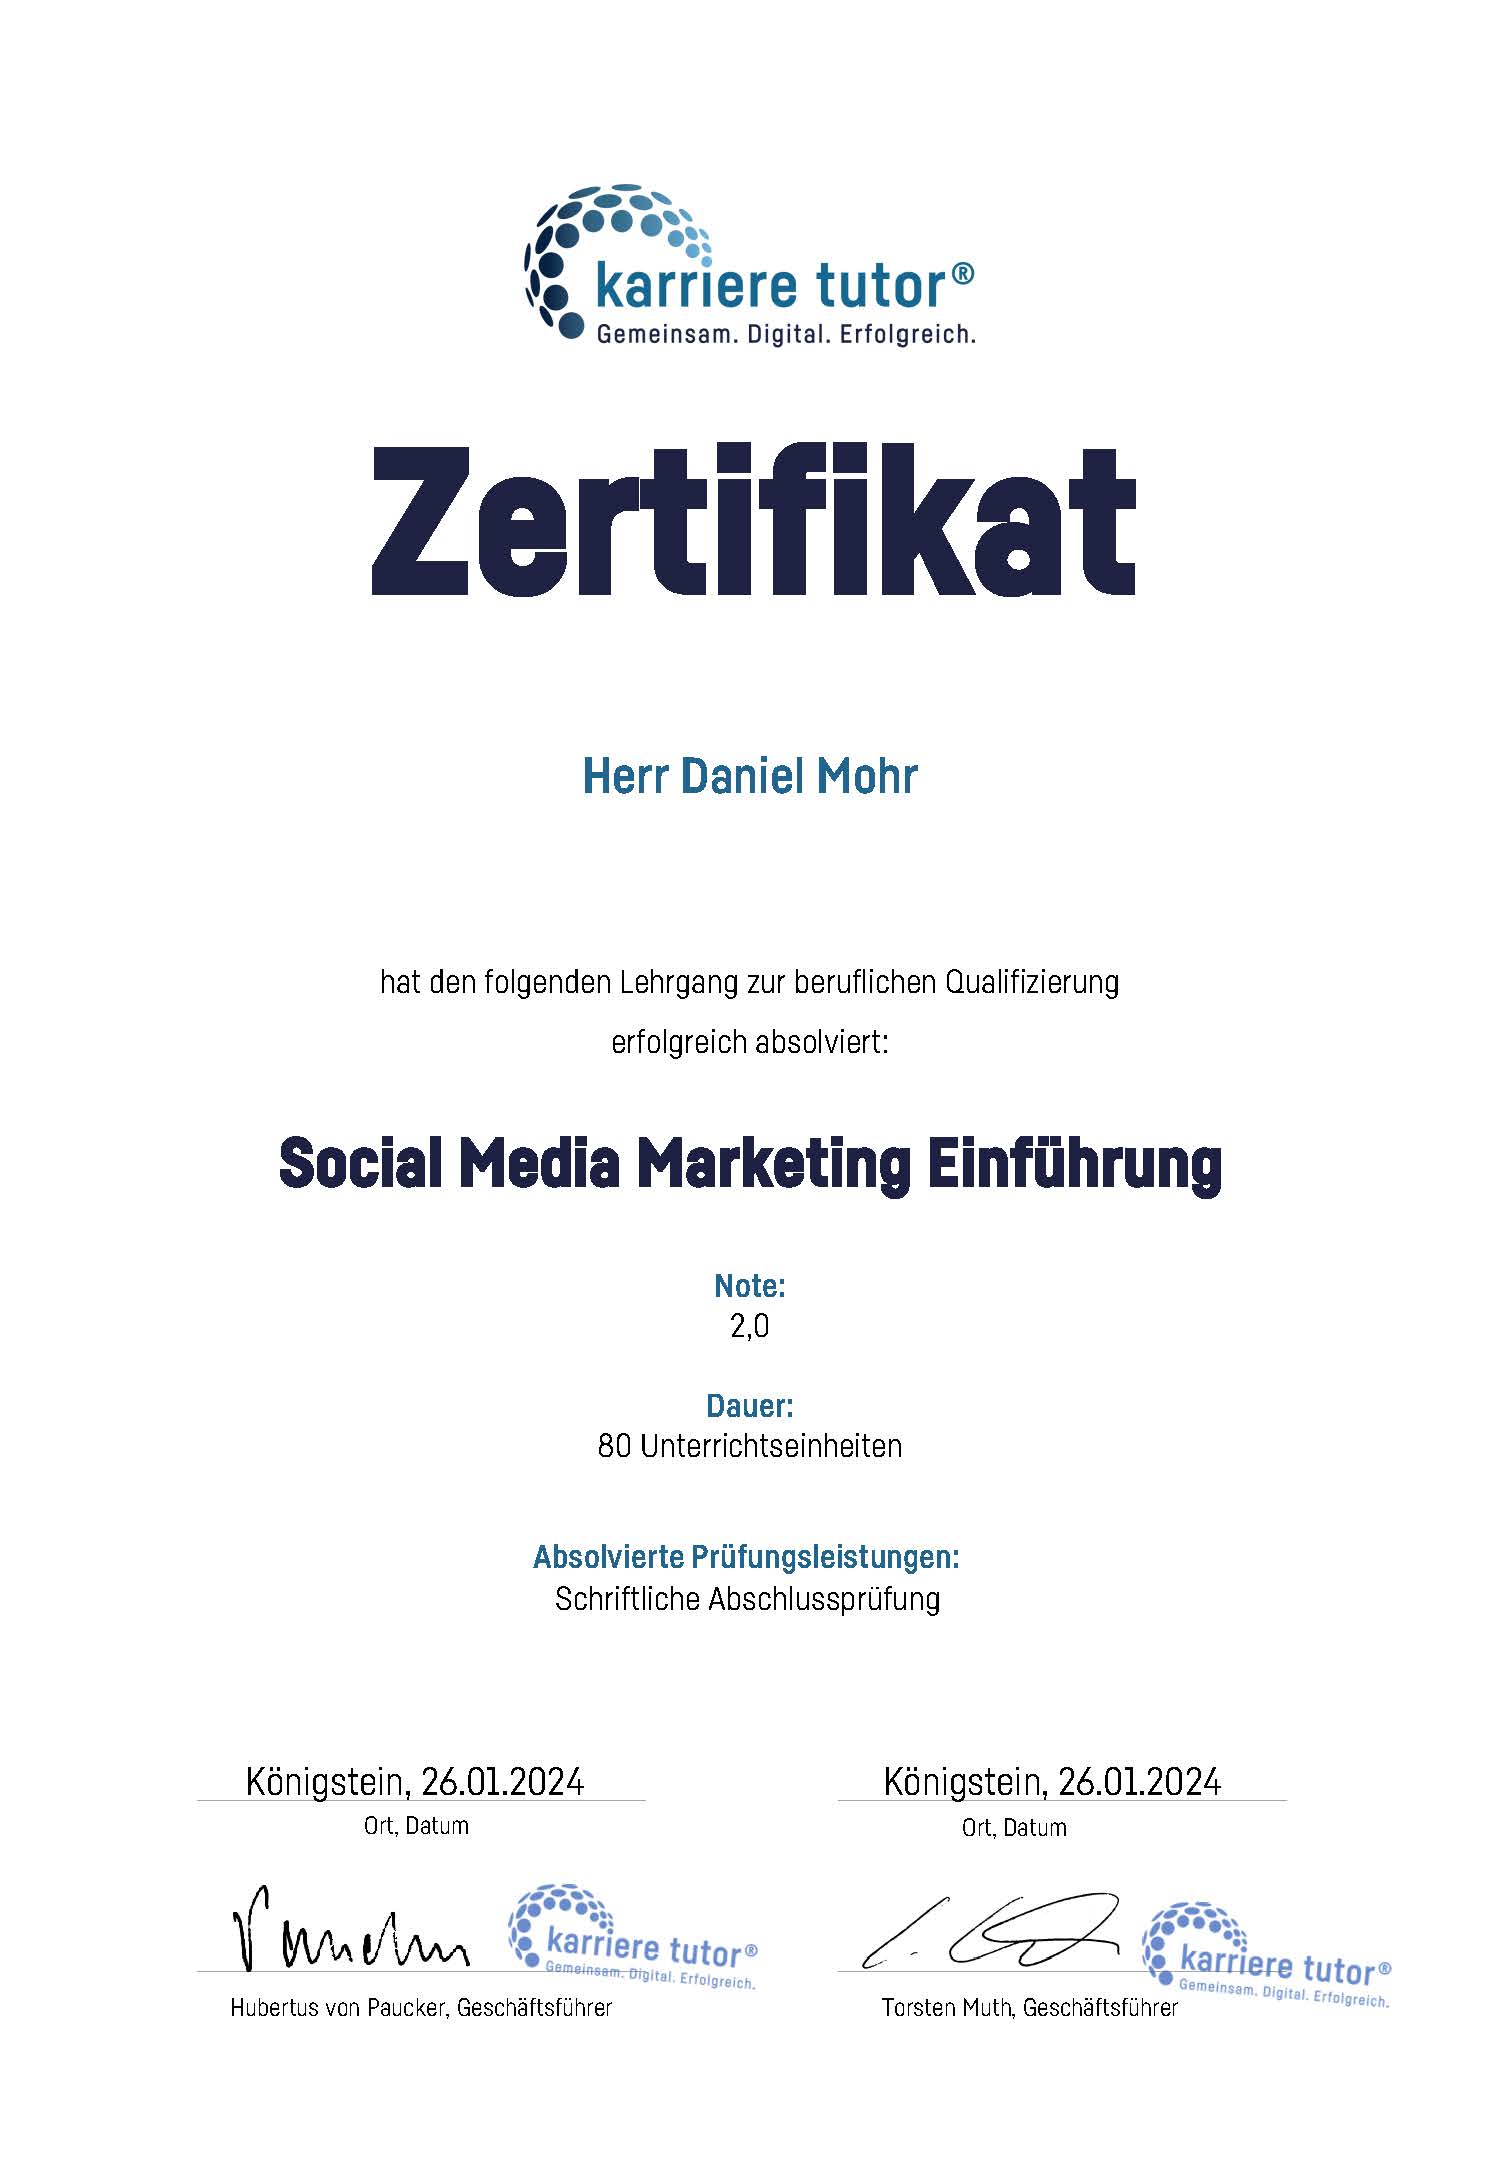 Social Media Marketing Einführung